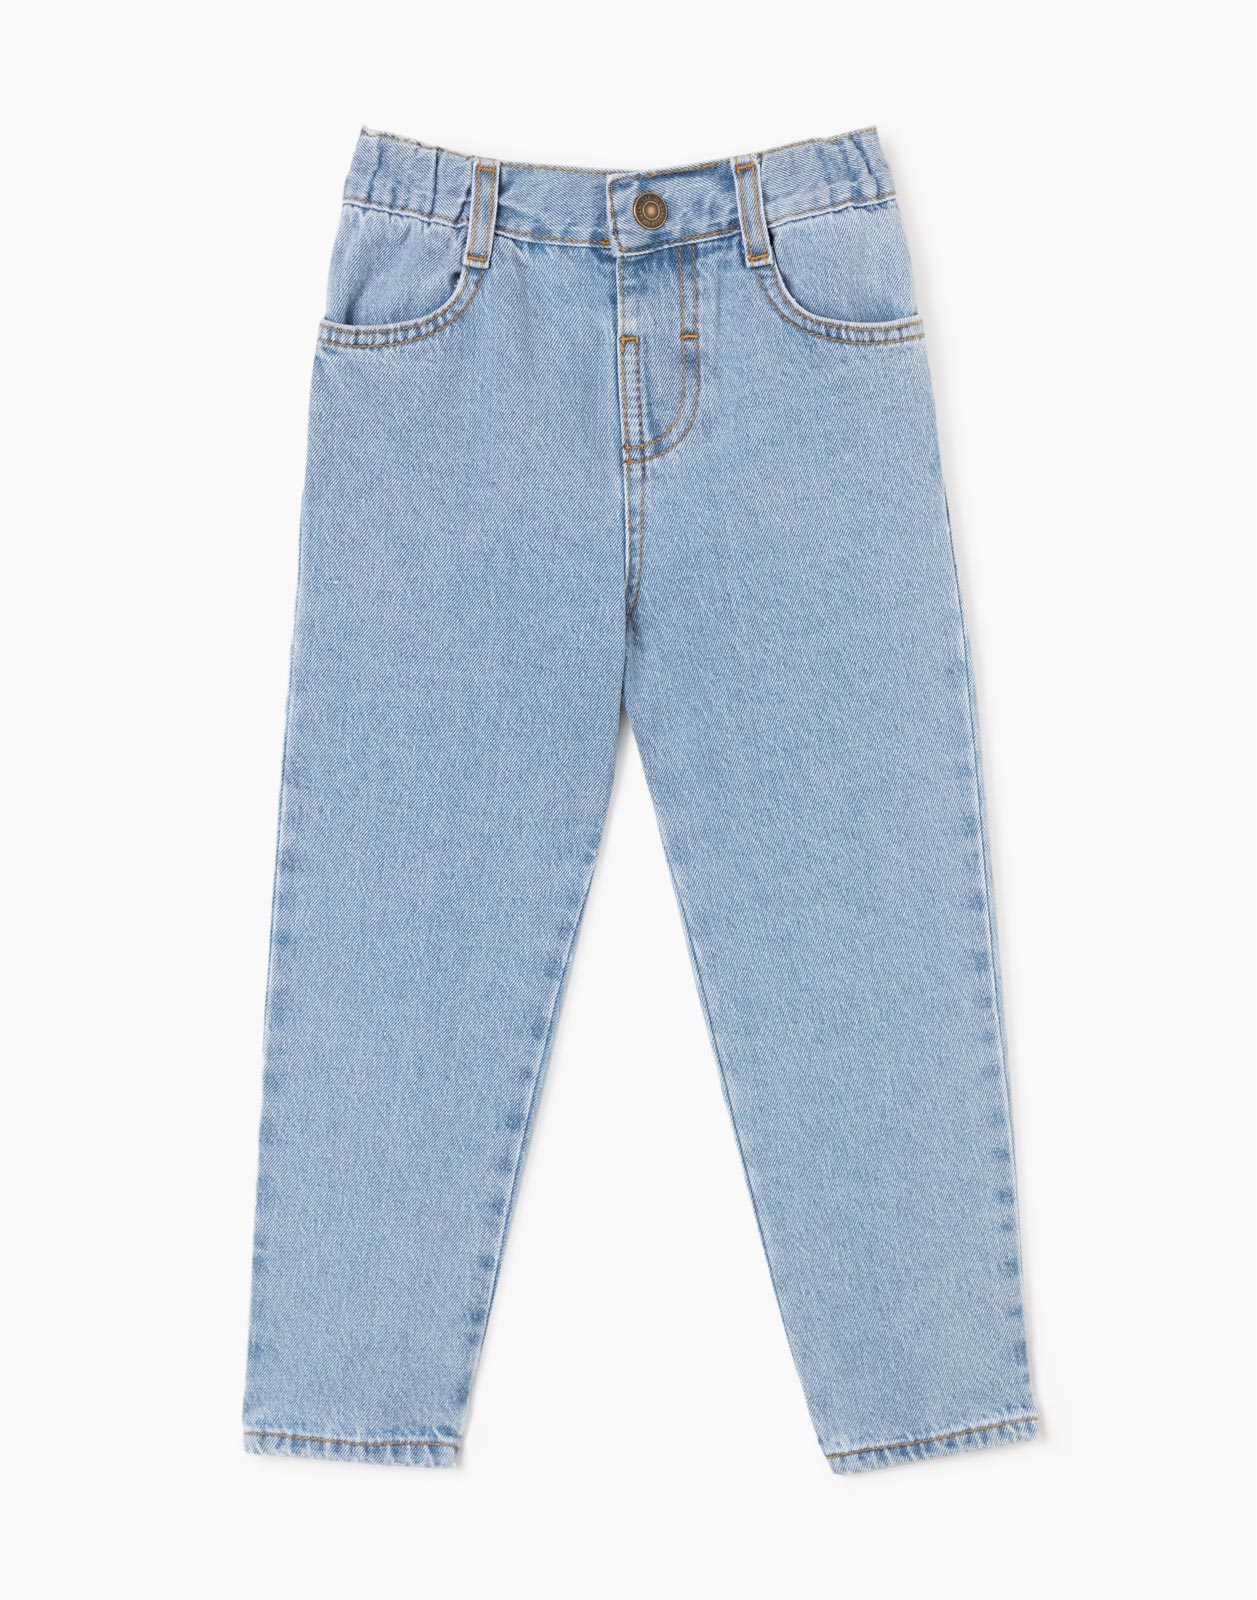 Прямые джинсы Straight на резинке для мальчика р.98